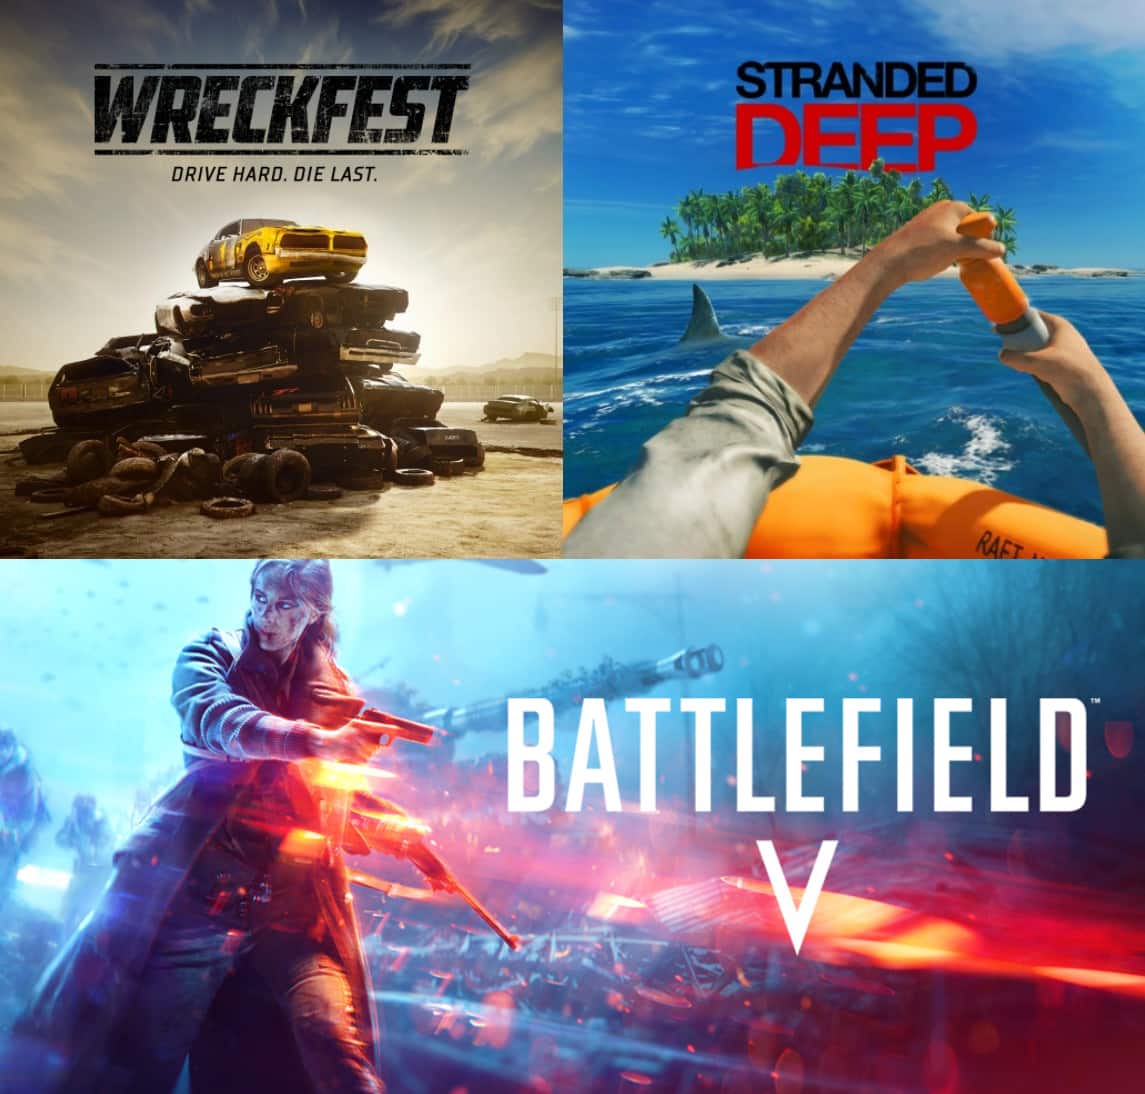 PS4/PS5 Digital Games: Battlefield V, Stranded Deep &  Wreckfest